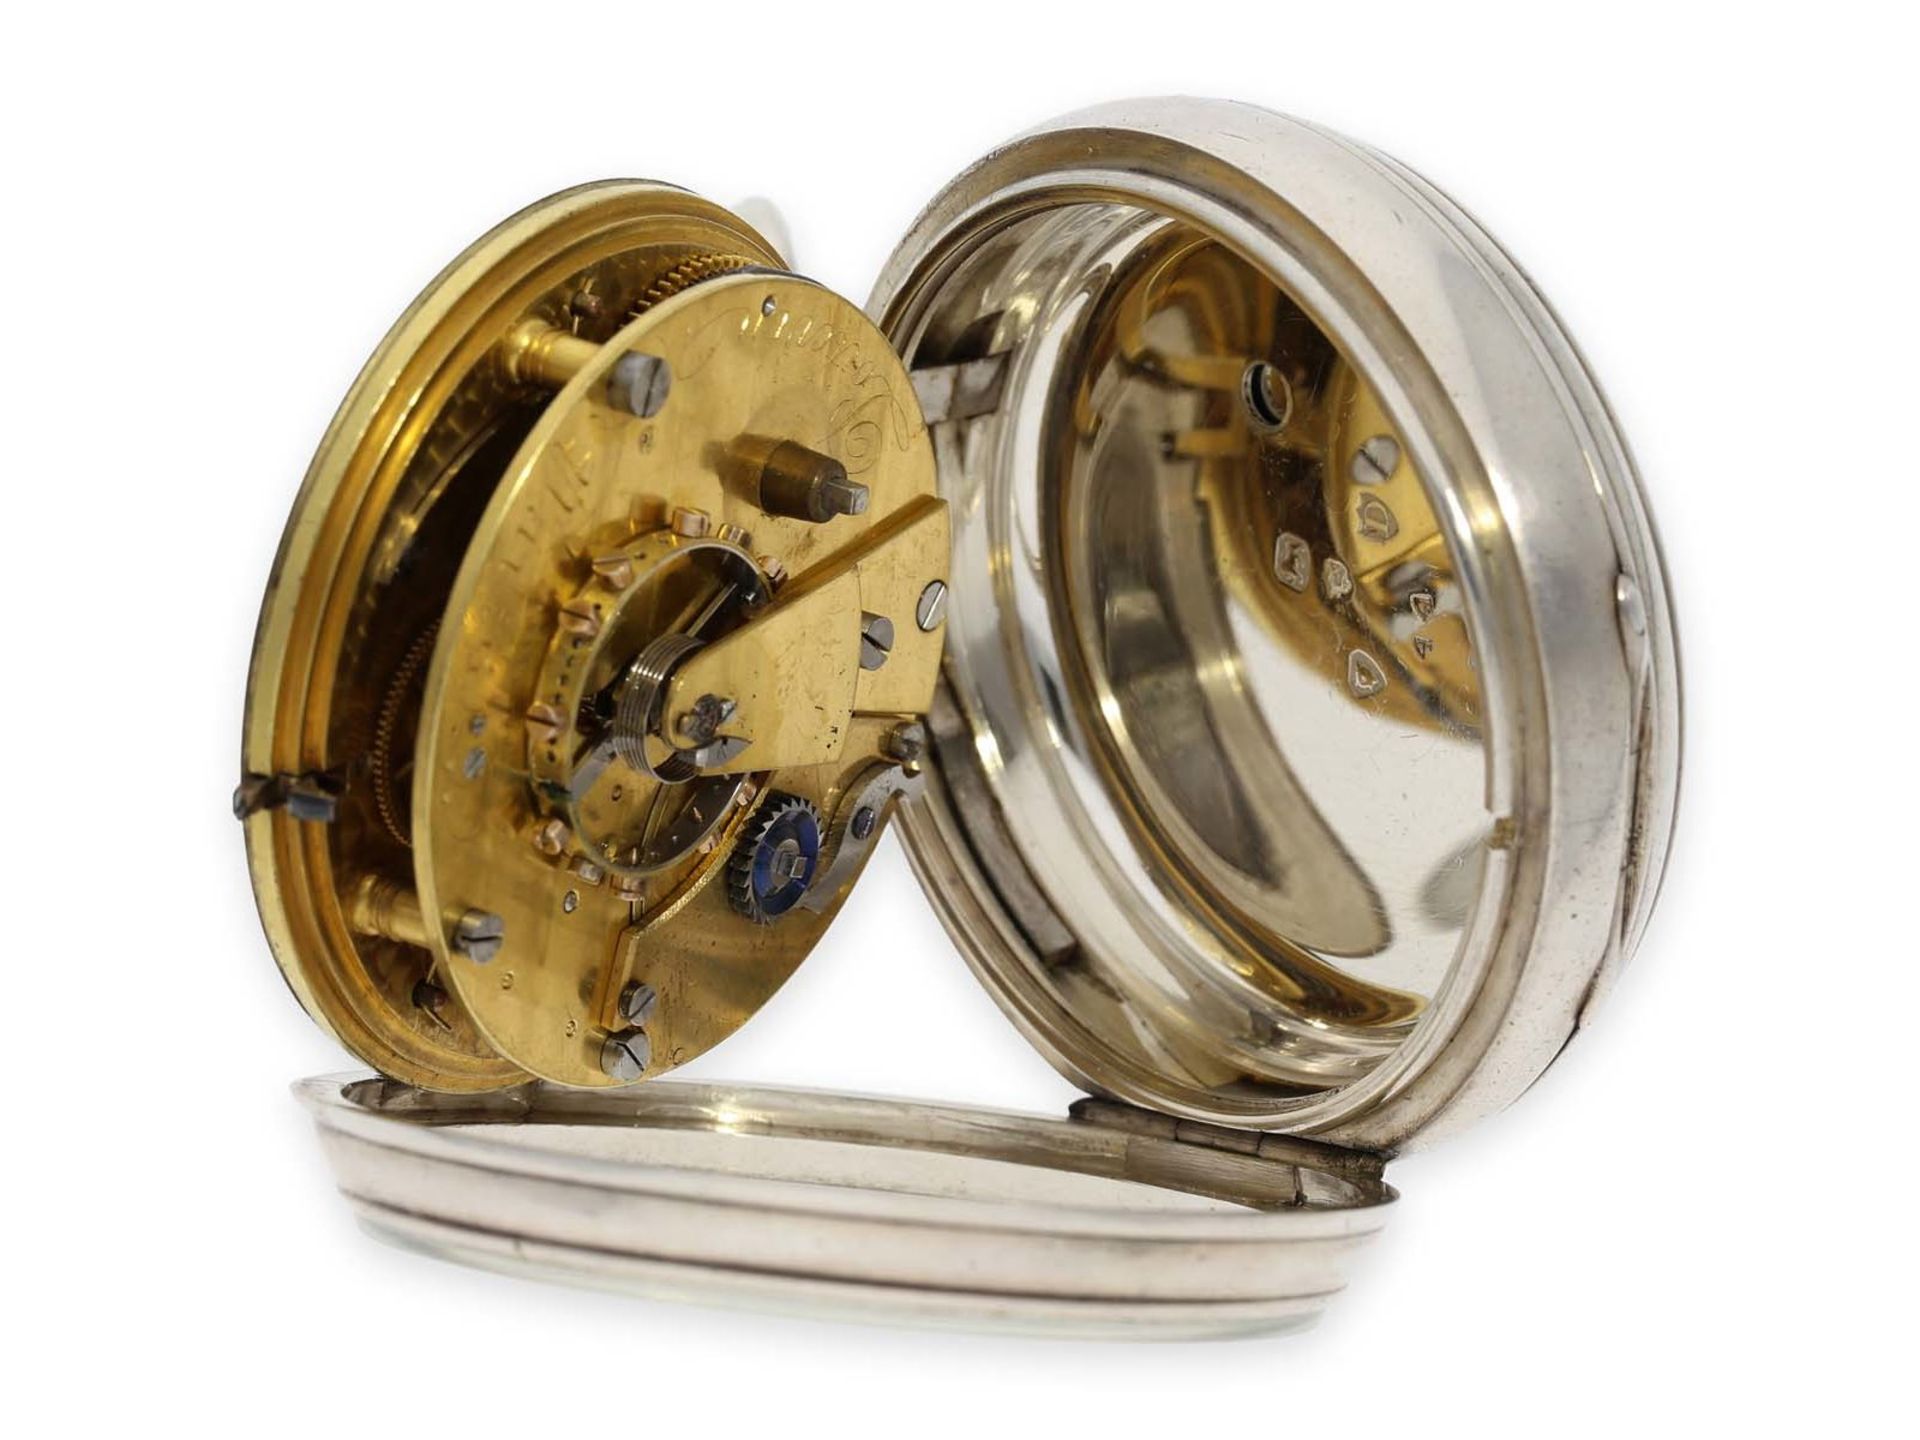 Taschenuhr: äußerst rares und sehr ungewöhnliches, besonders schweres französisches Taschenchronomet - Bild 5 aus 6